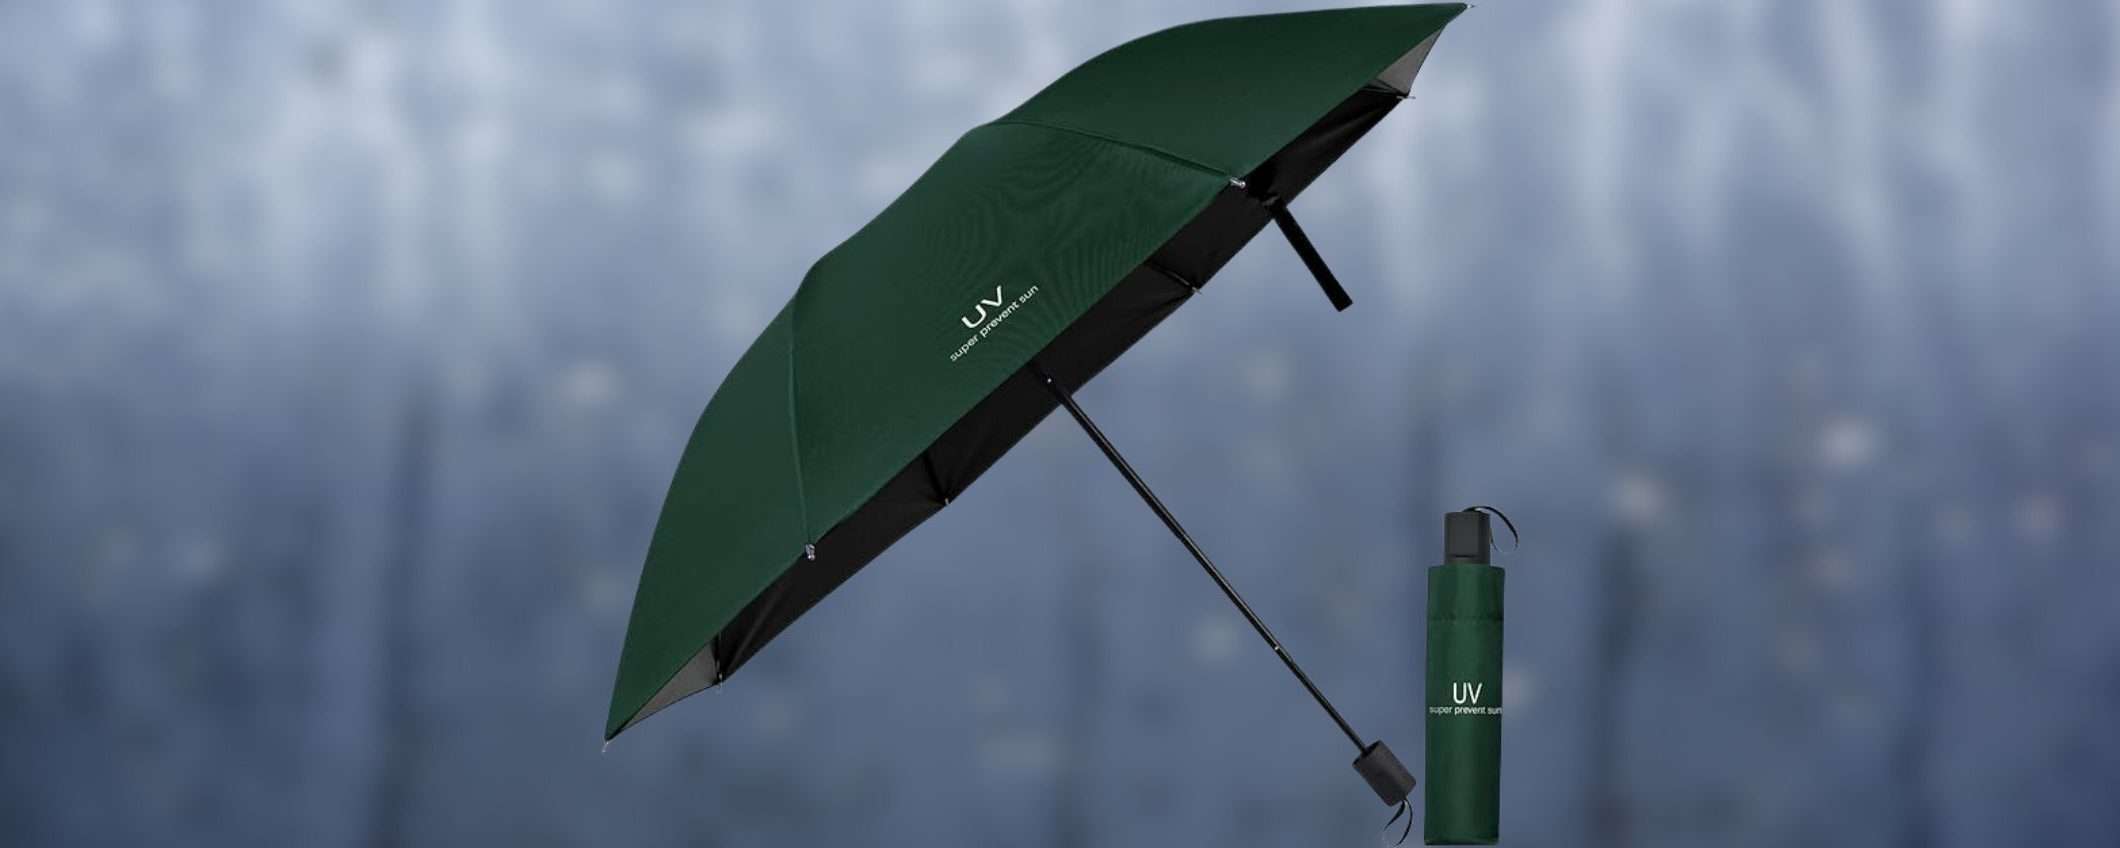 Questo ombrello in offerta su Amazon RESISTE anche ad un URAGANO